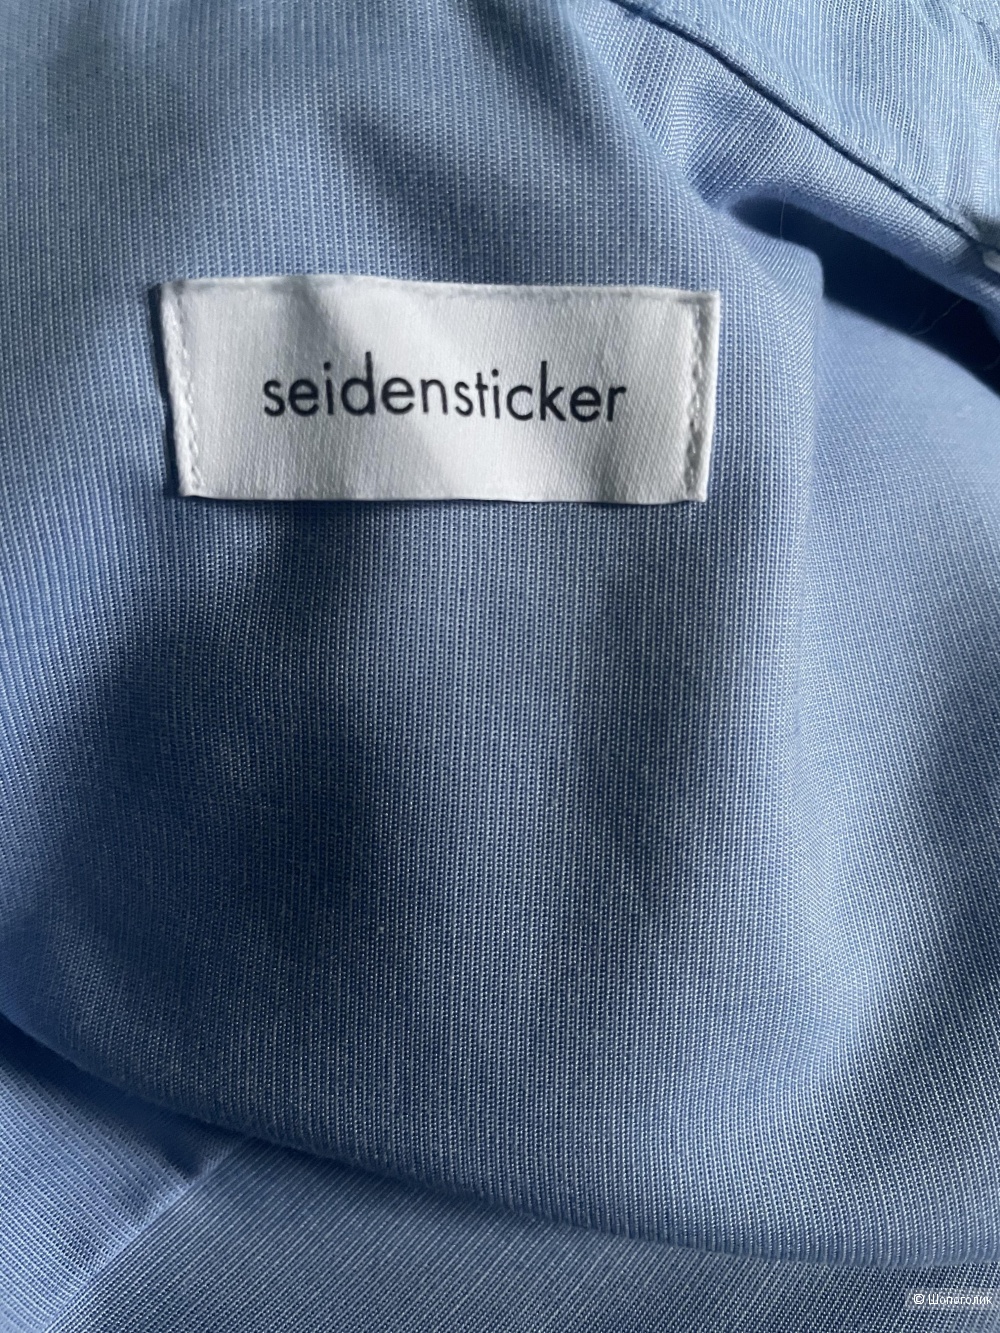 Блузка женская Seidensticker размер xs (36)